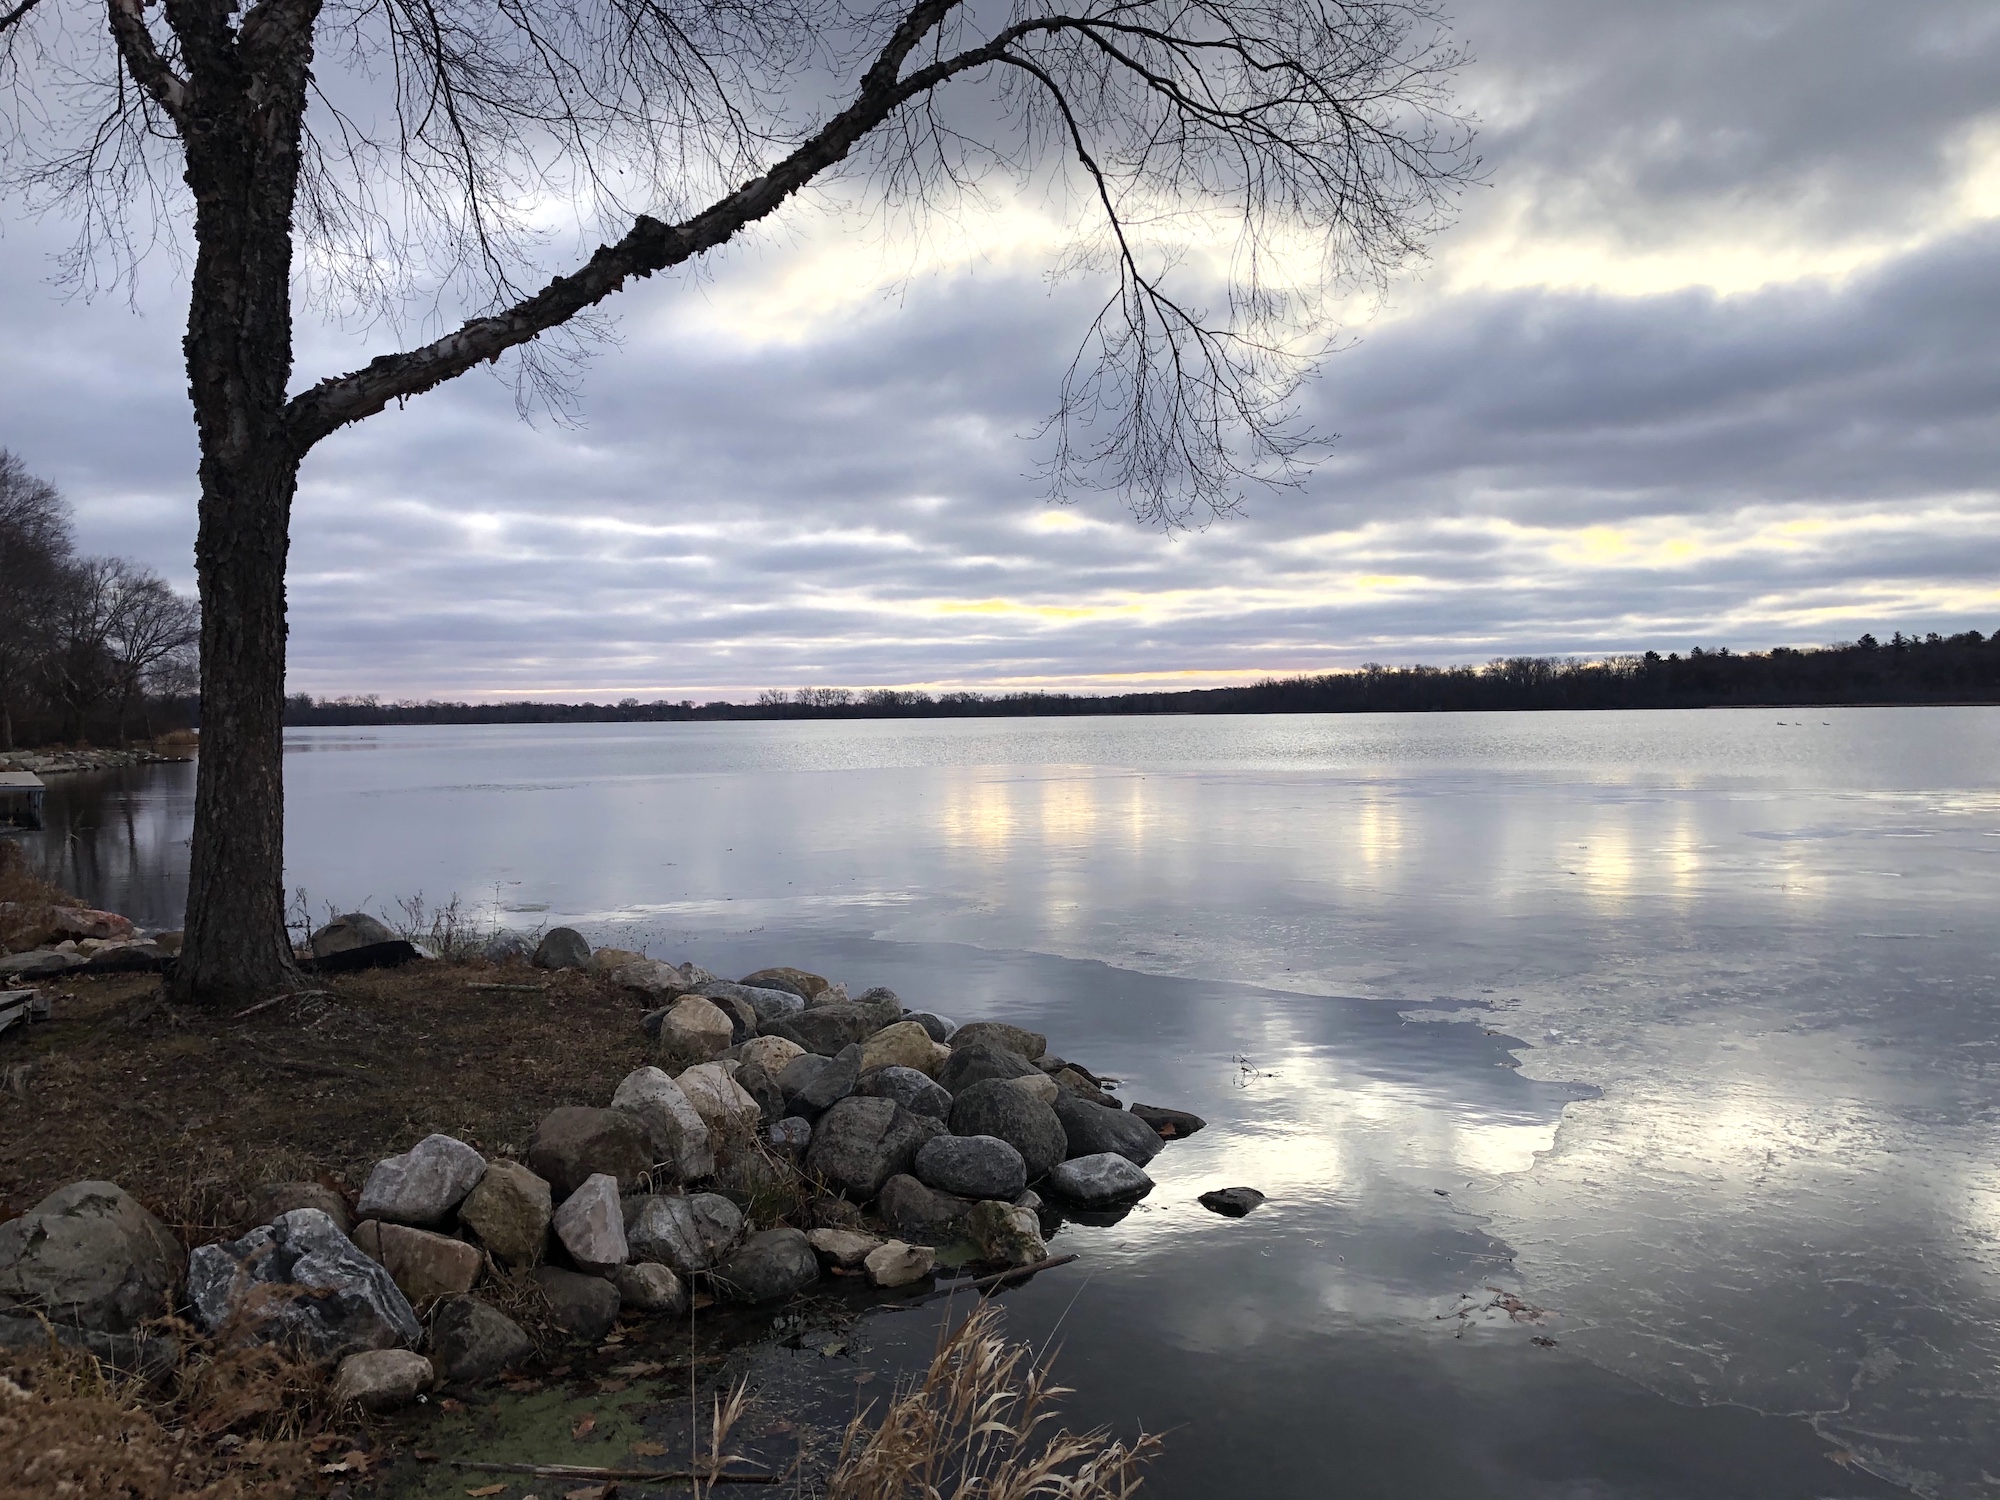 Lake Wingra on December 6, 2019.